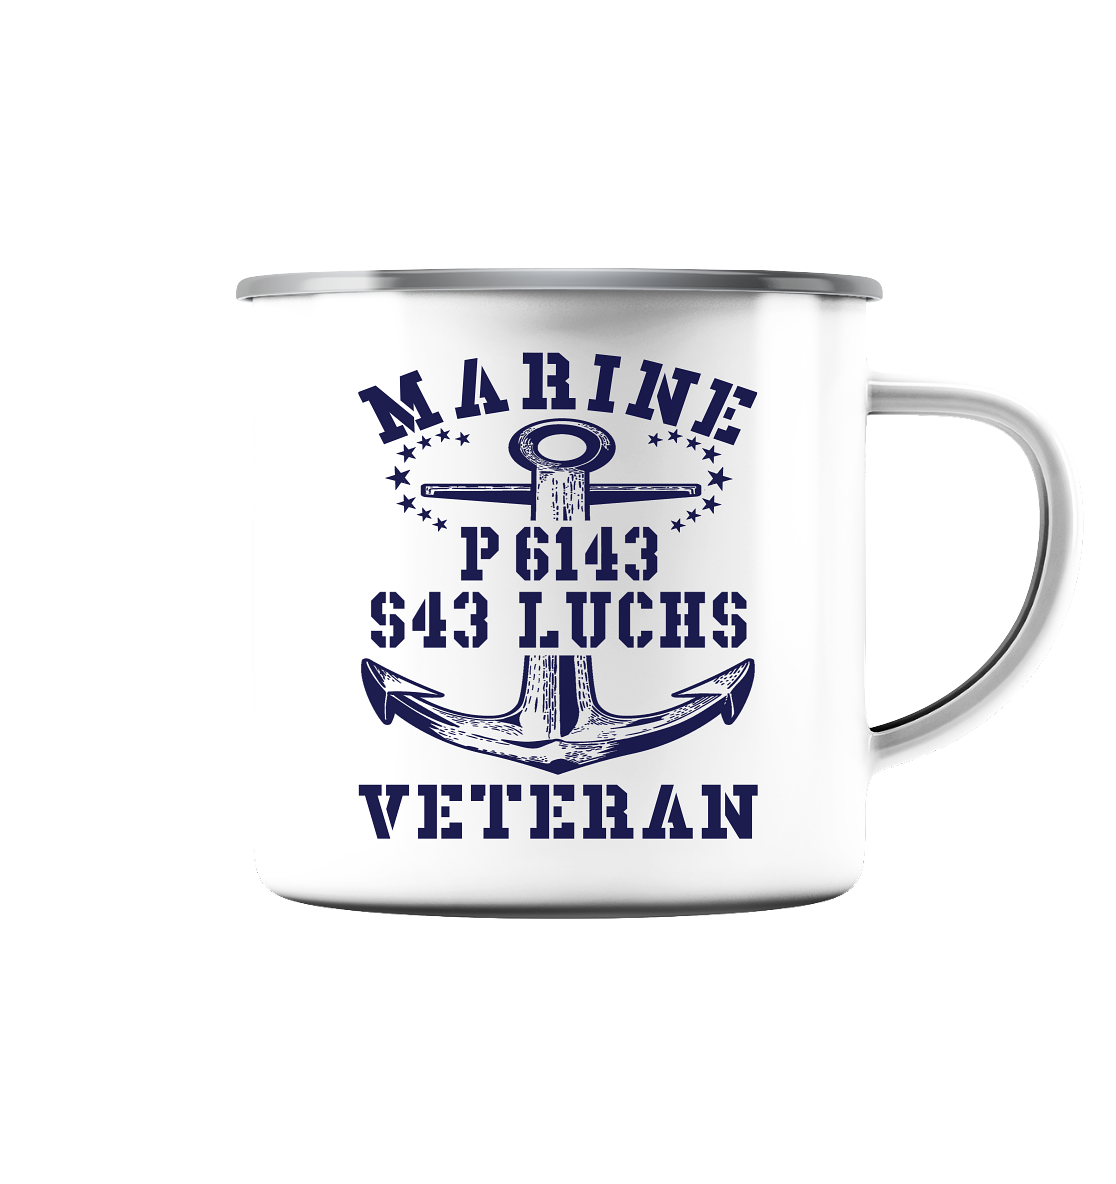 P6143 S43 LUCHS Marine Veteran - Emaille Tasse (Silber)